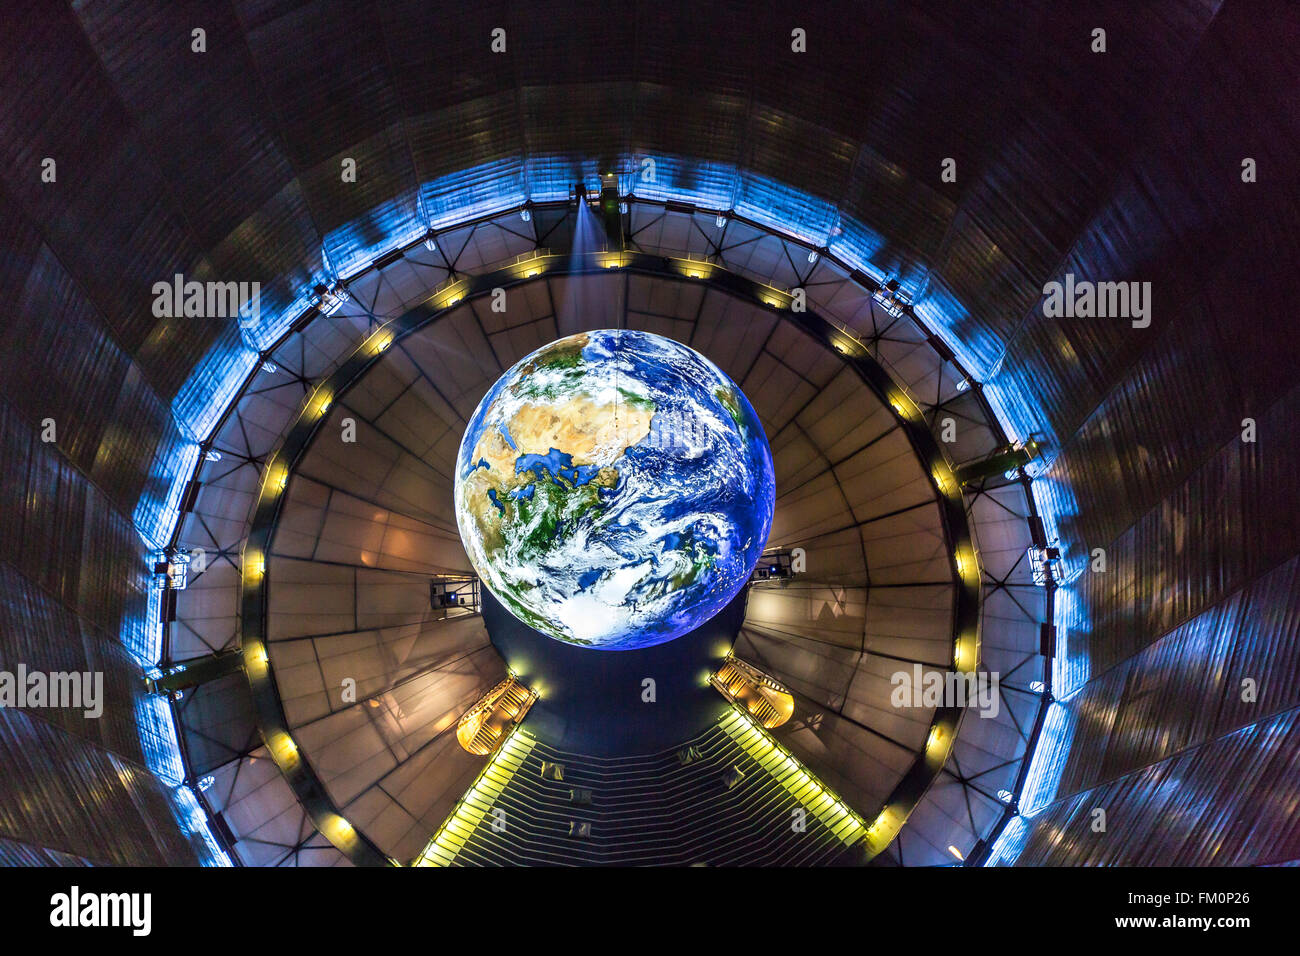 Der Gasometer in Oberhausen, Deutschland, höchste Ausstellungshalle Europas, 117 Meter Höhe, neue Ausstellung, Wunder der Natur, Stockfoto